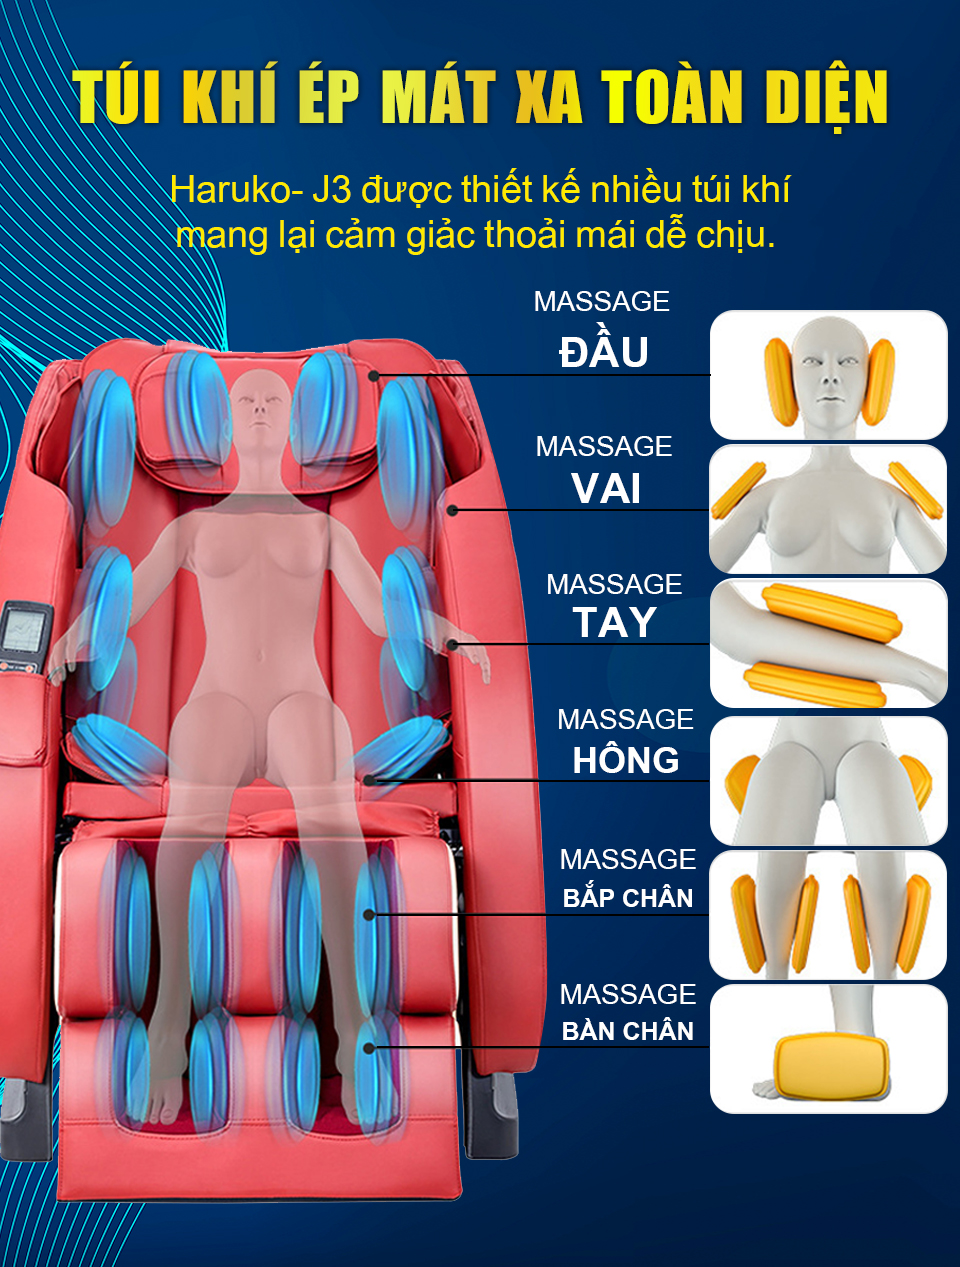 Túi khí ép massage sẽ đem lại sự thoải mái toàn diện cho người sử dụng ghế massage